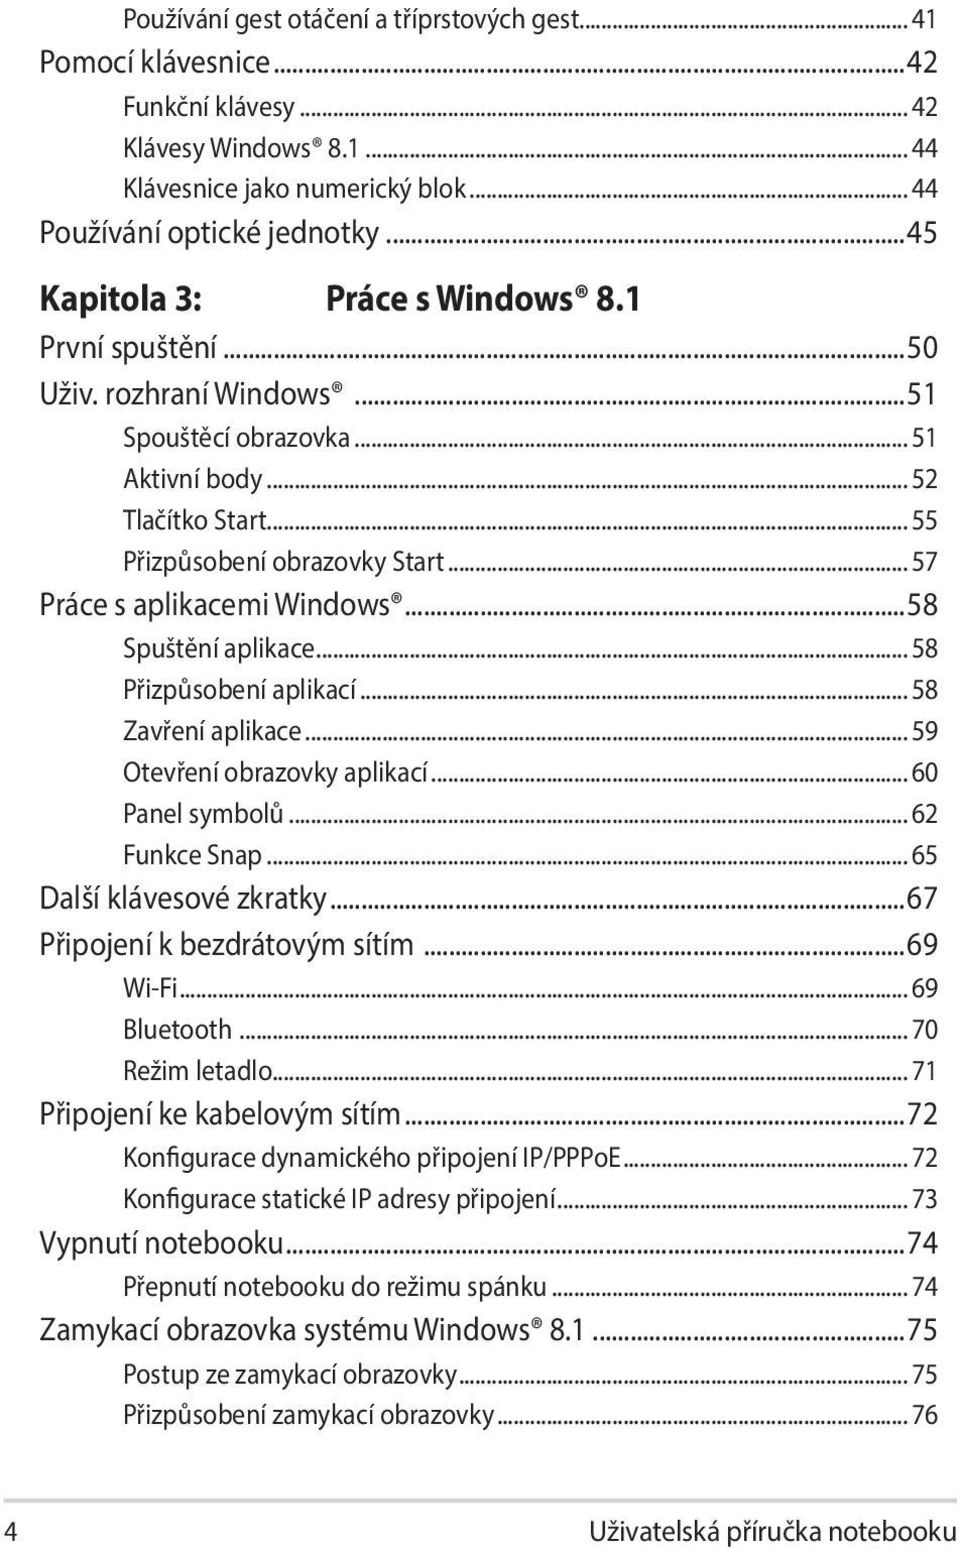 .. 57 Práce s aplikacemi Windows...58 Spuštění aplikace... 58 Přizpůsobení aplikací... 58 Zavření aplikace... 59 Otevření obrazovky aplikací... 60 Panel symbolů... 62 Funkce Snap.